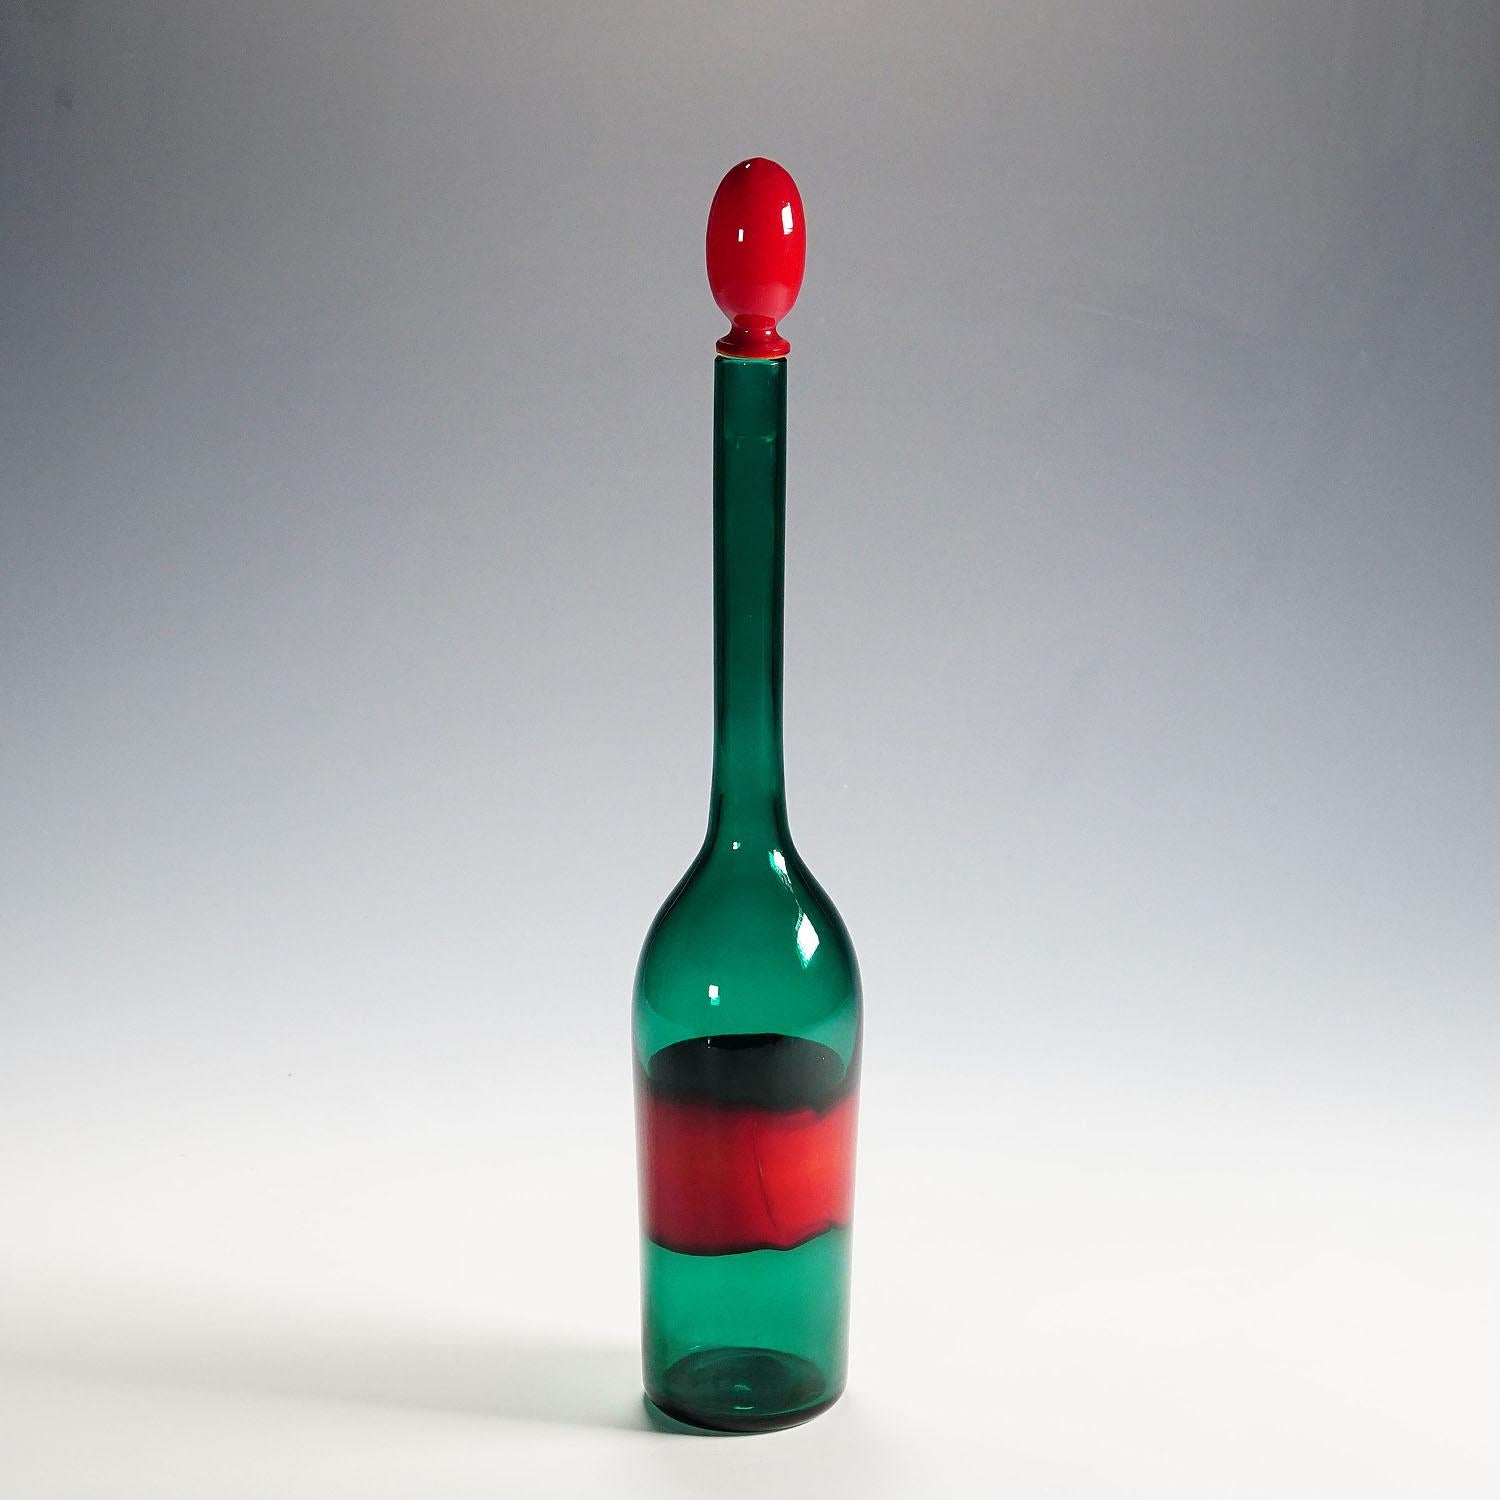 Venini Kunstglasflasche mit Fasce-Dekor, Murano 1950er Jahre

Eine große Glasflasche aus transparentem grünem Glas mit rotem Stopfen und einem roten 